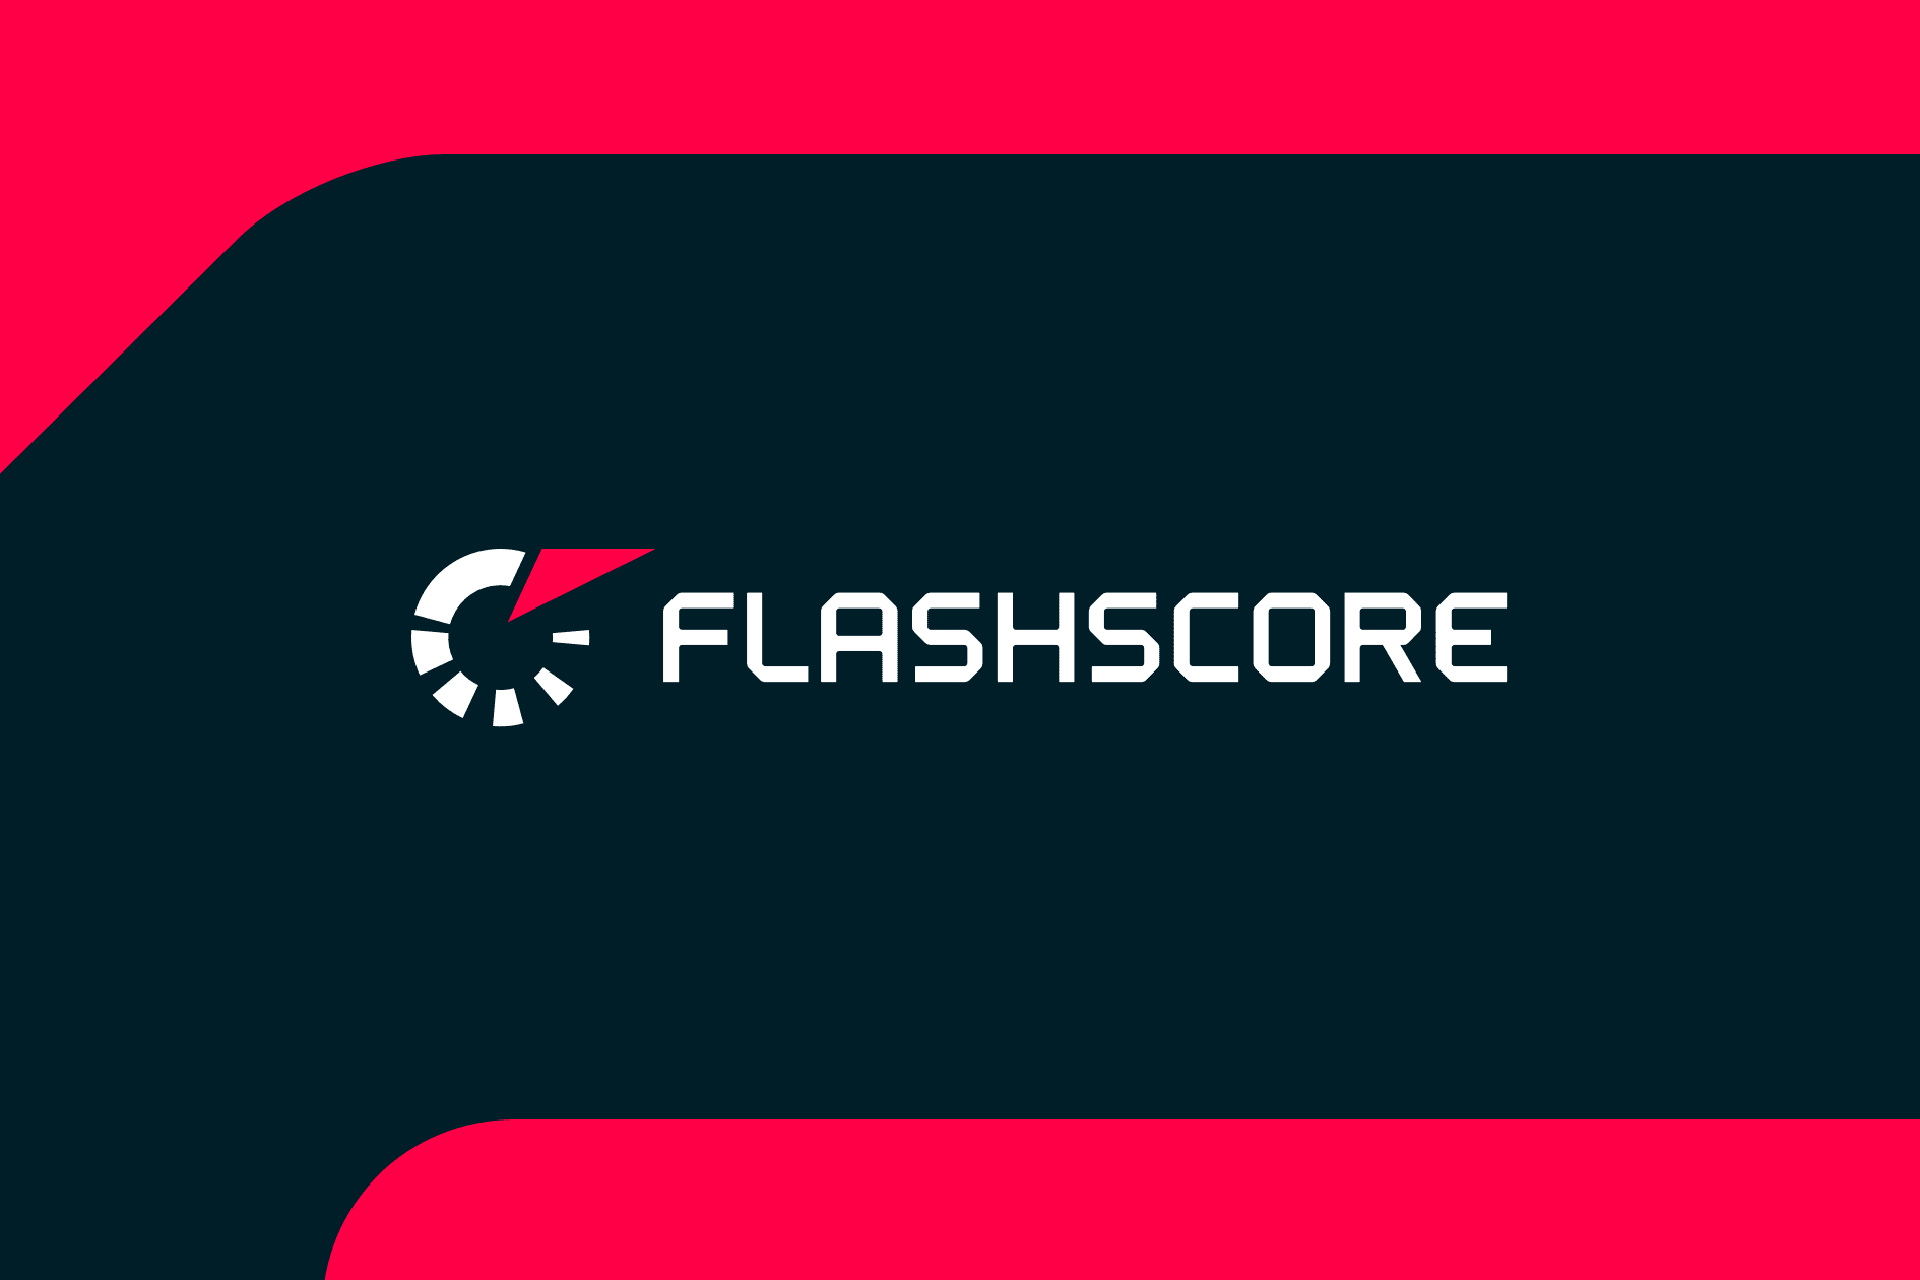 لوگوی FLASHScore روی صفحه قرمز سیاه و سفید